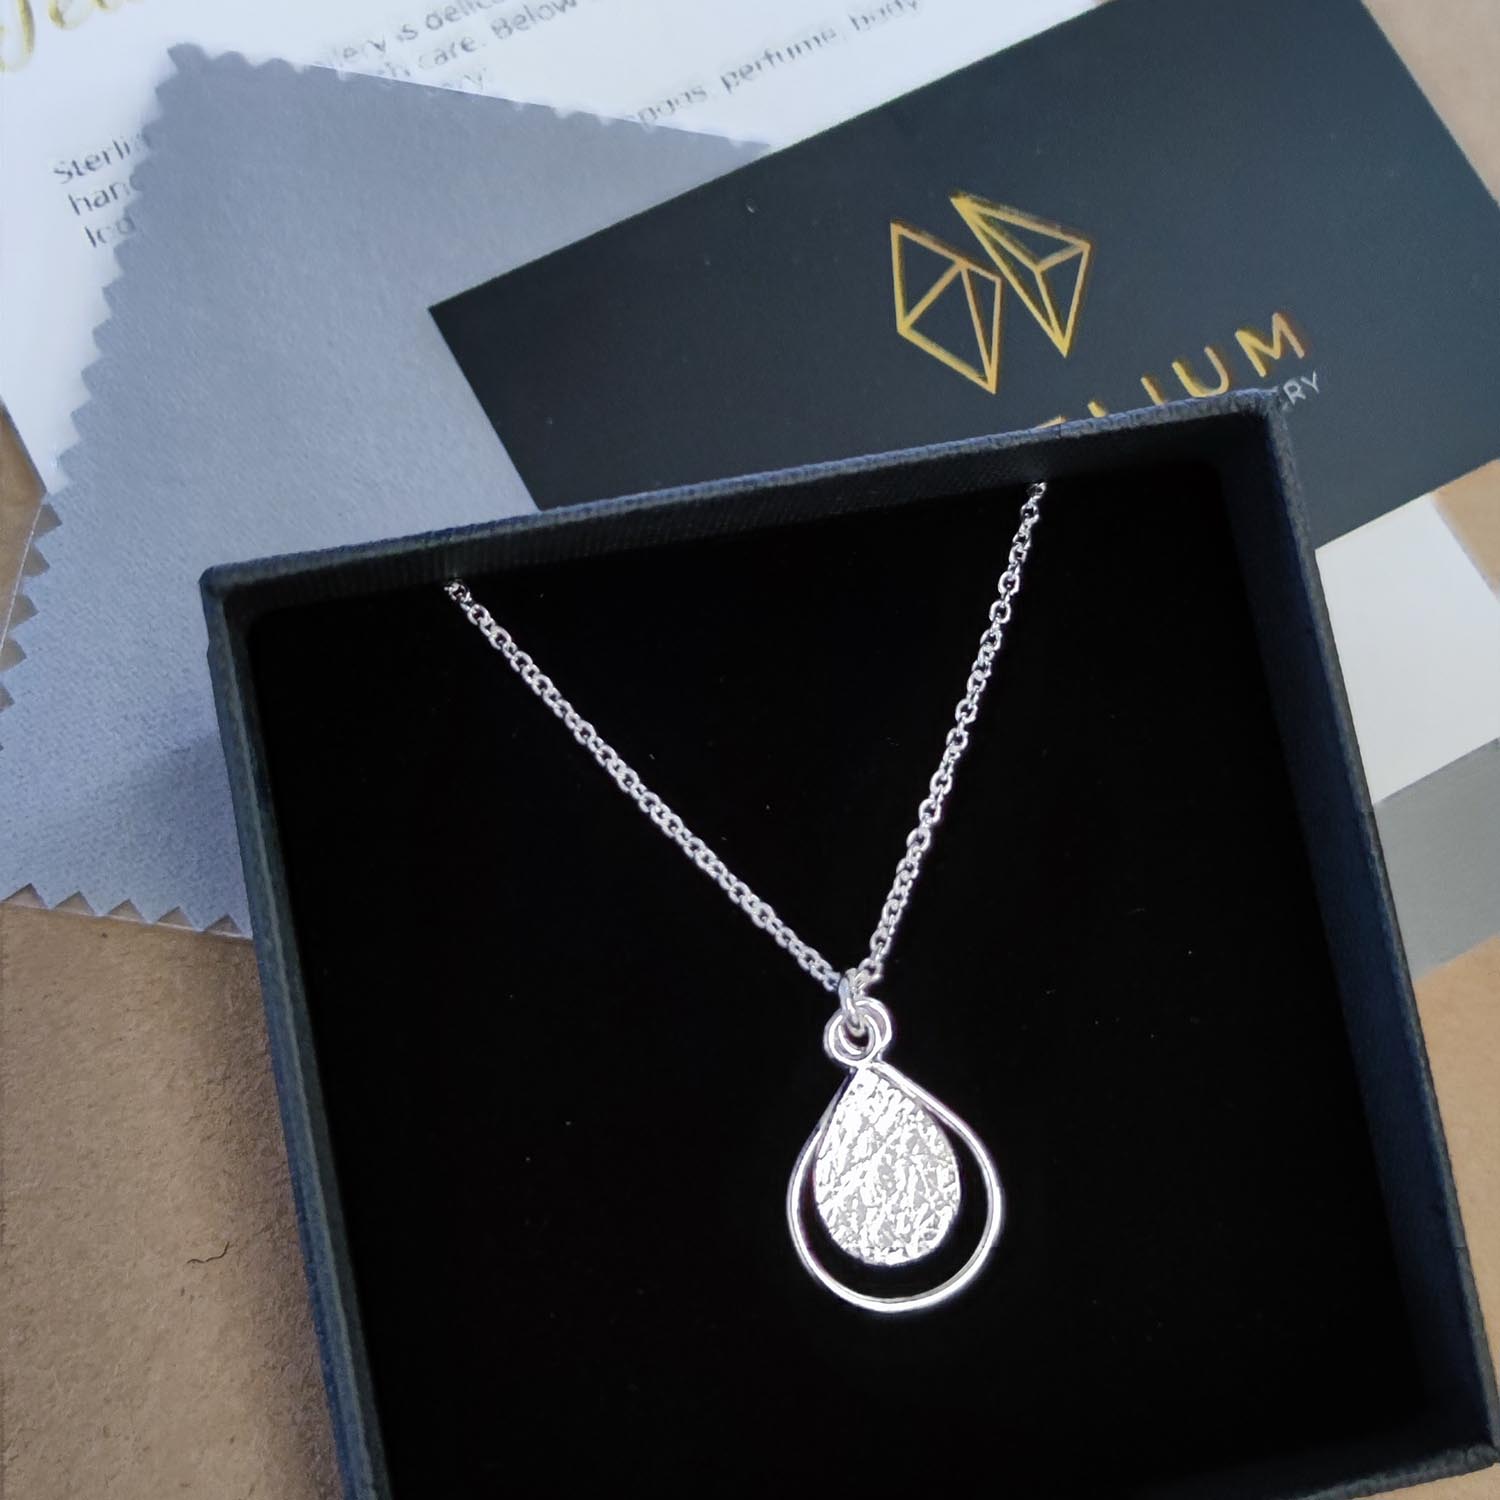 handmade dewdrop necklace by aurelium in gift box